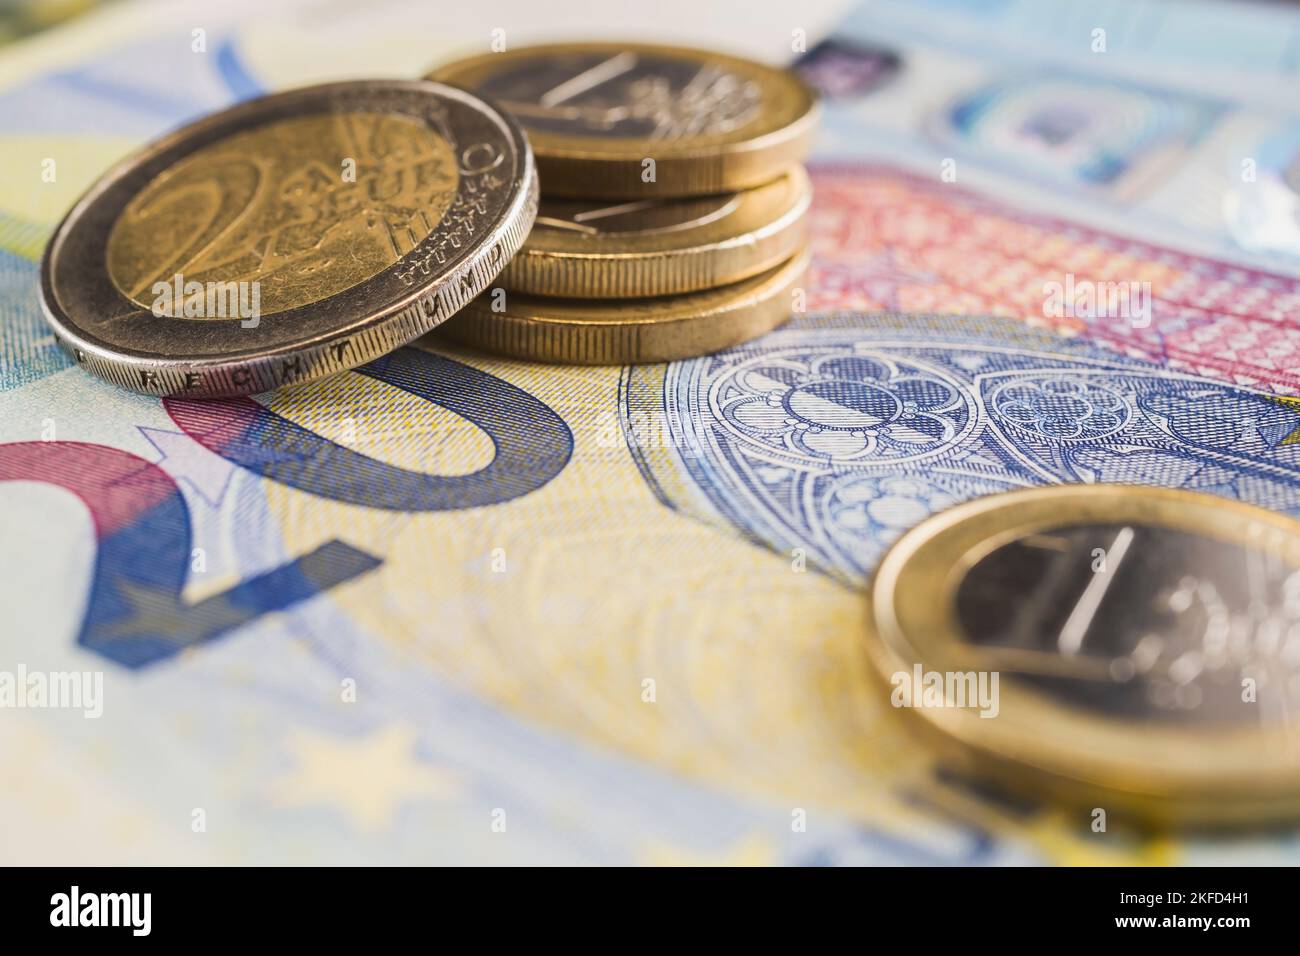 Pila de dos monedas y un euro encima de un billete de banco en papel moneda de veinte euros. Foto de stock